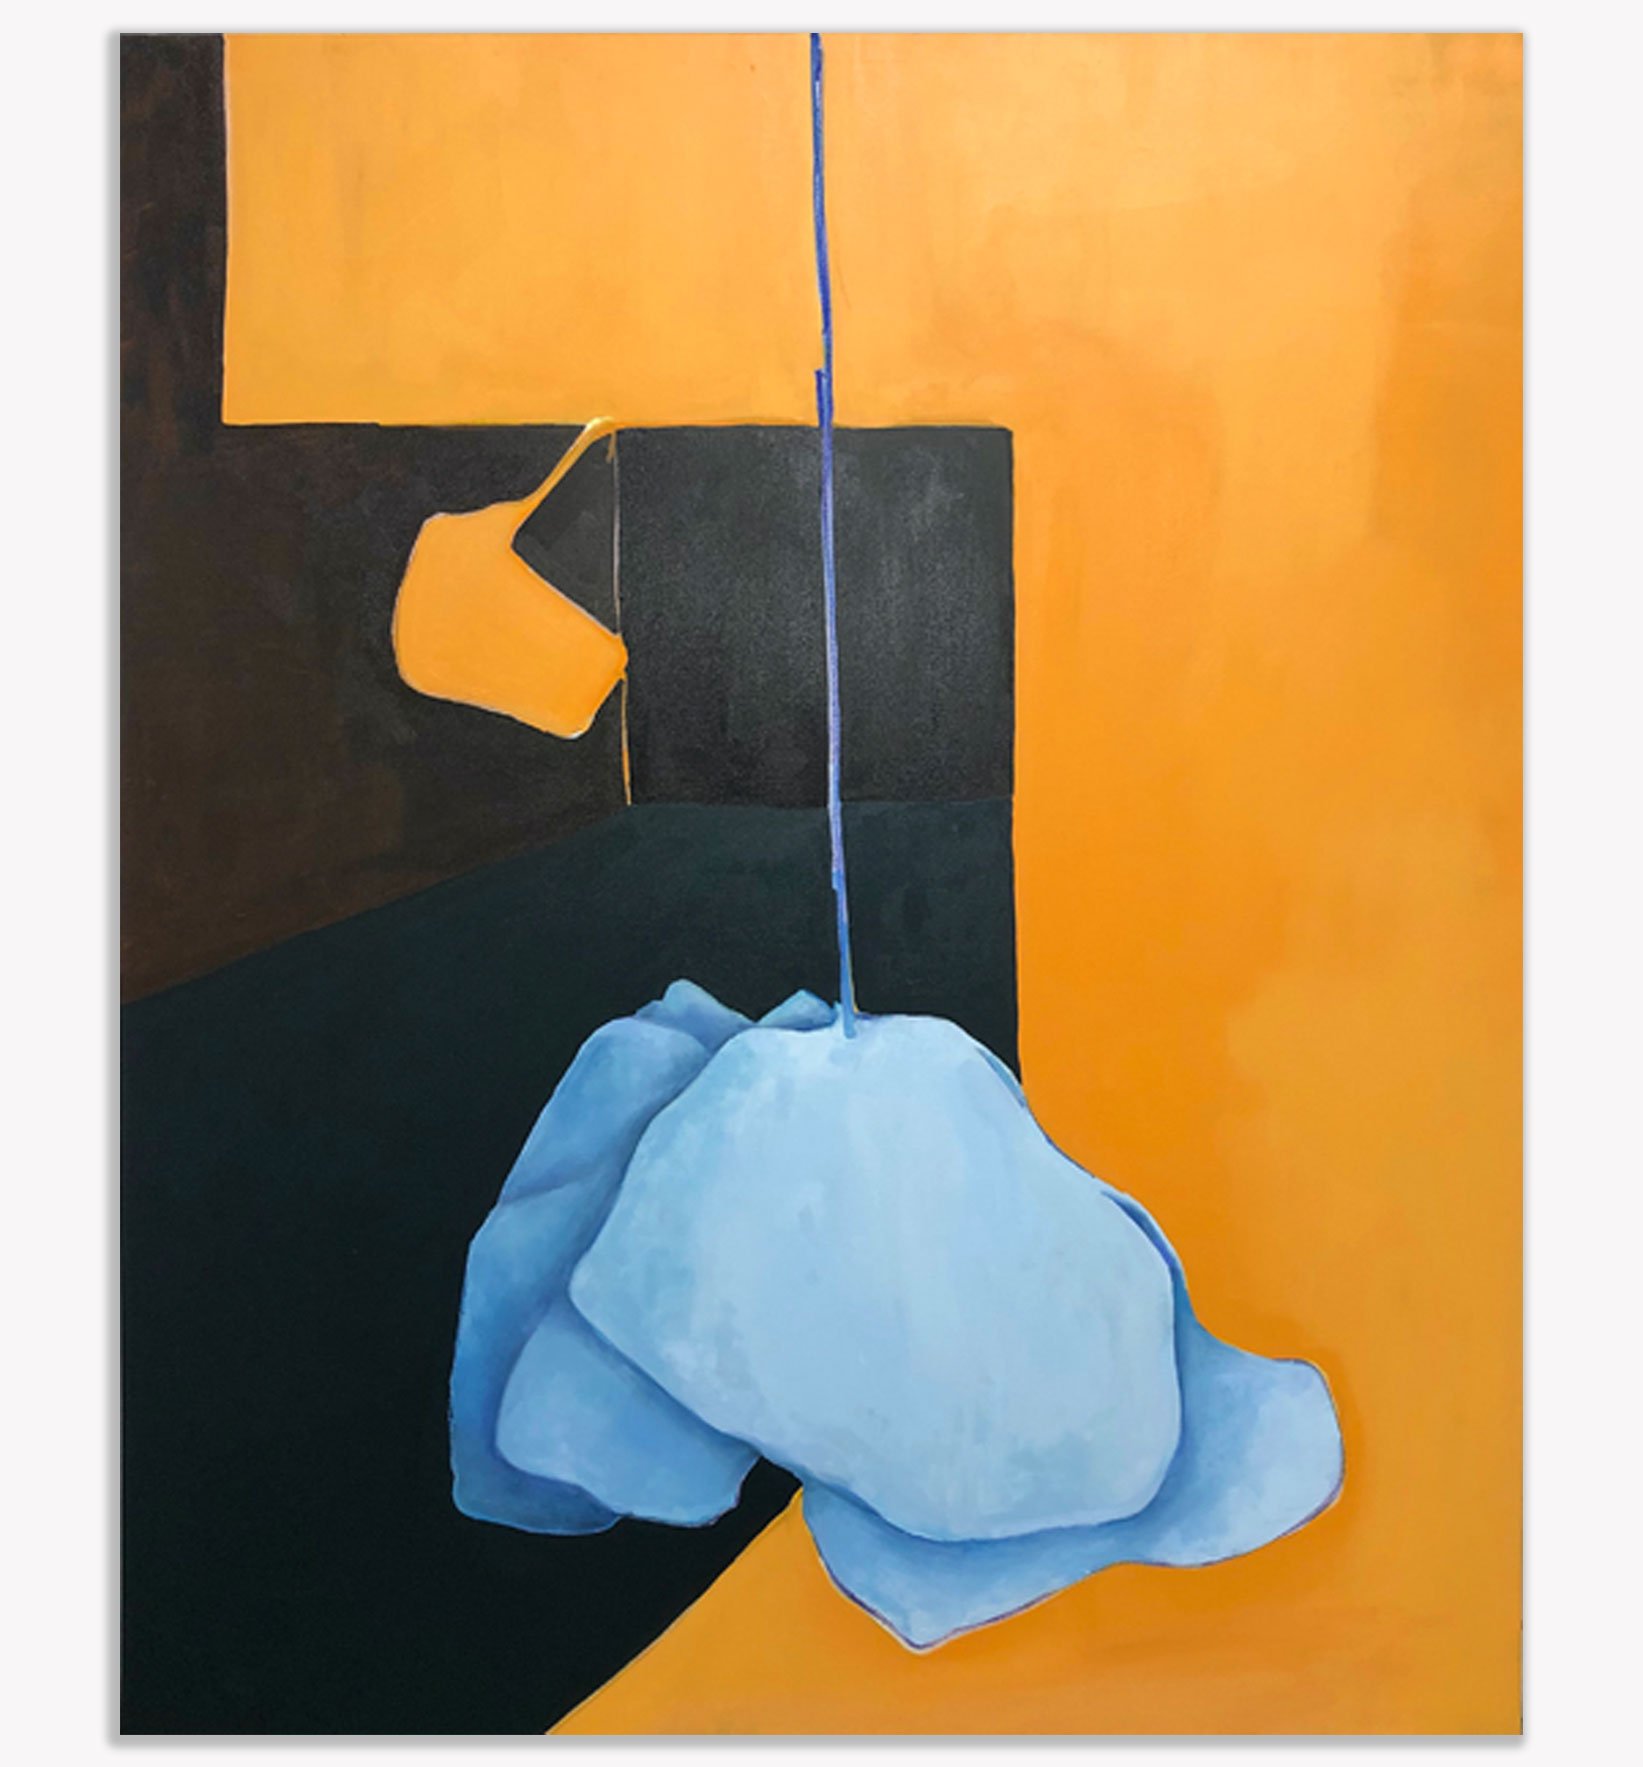   Delicate Invasion , Kristi Head 2020. Oil on canvas, 72 x 52 inches. 